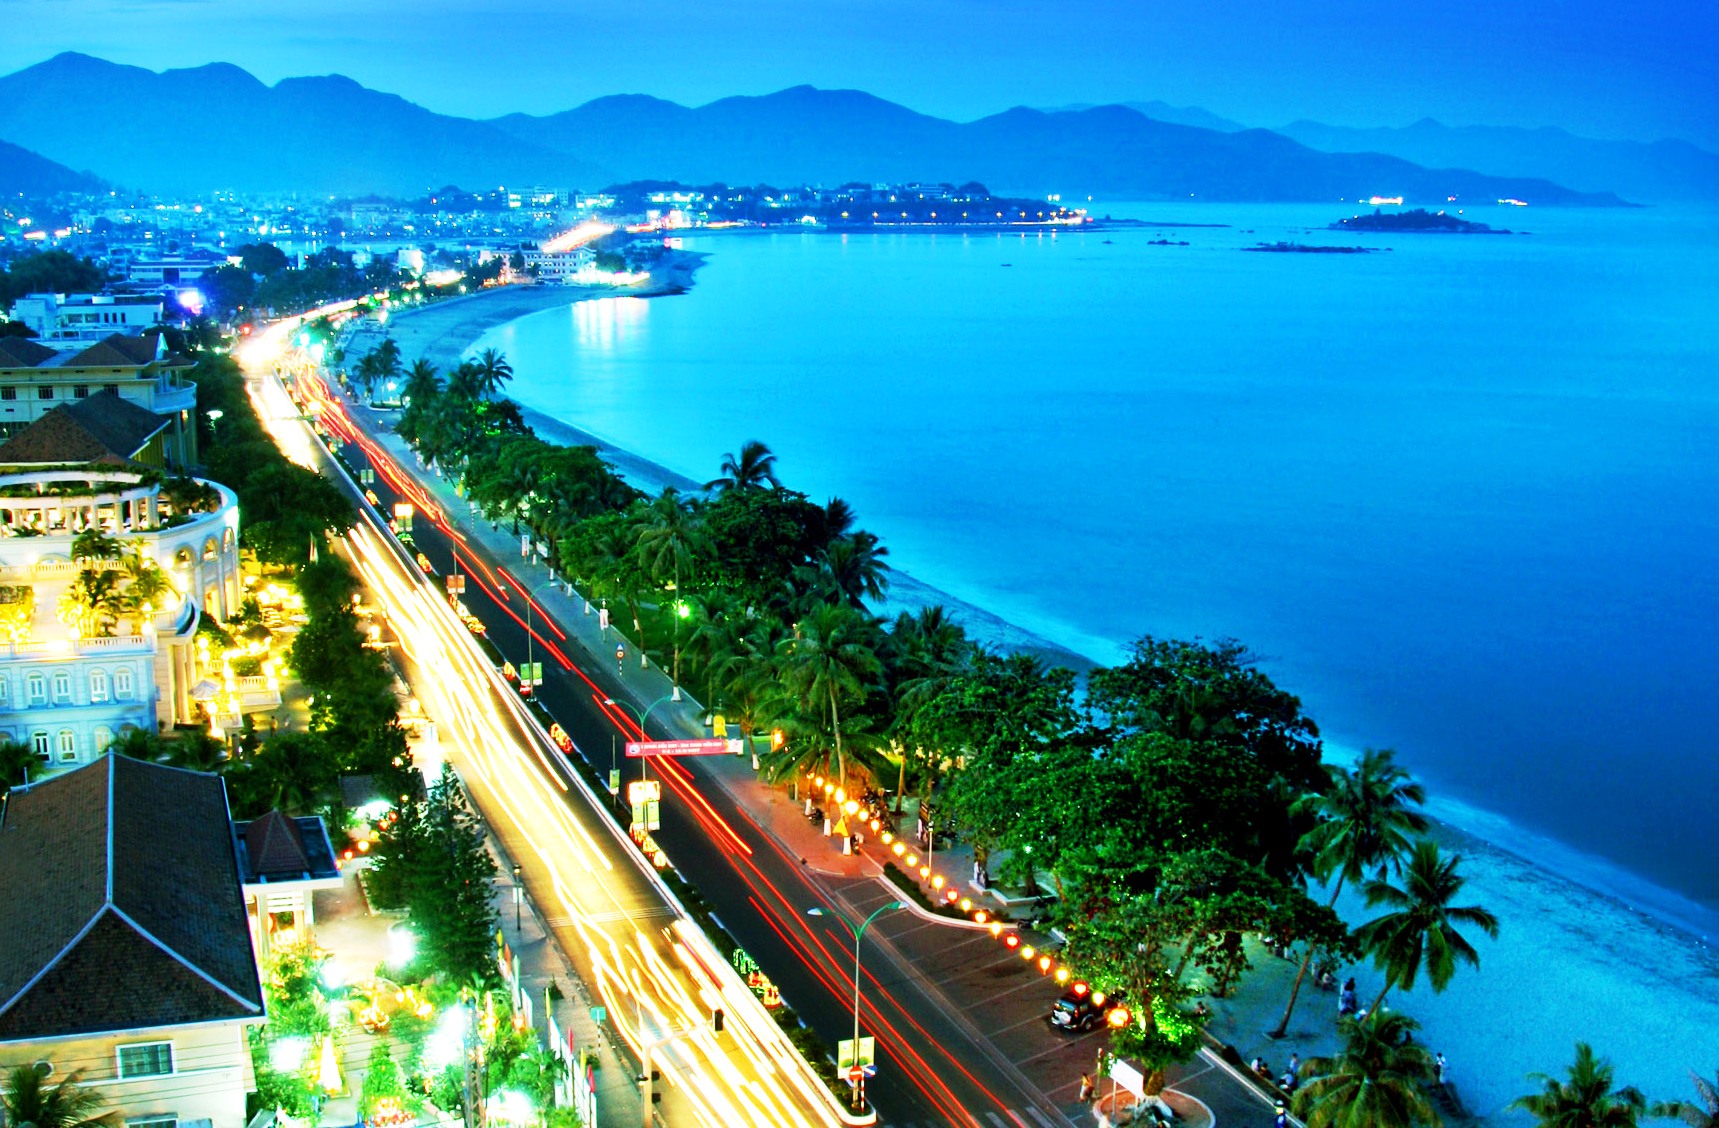 Du lịch Nha Trang từ lâu đã nổi tiếng với nhiều điểm tham quan thú vị